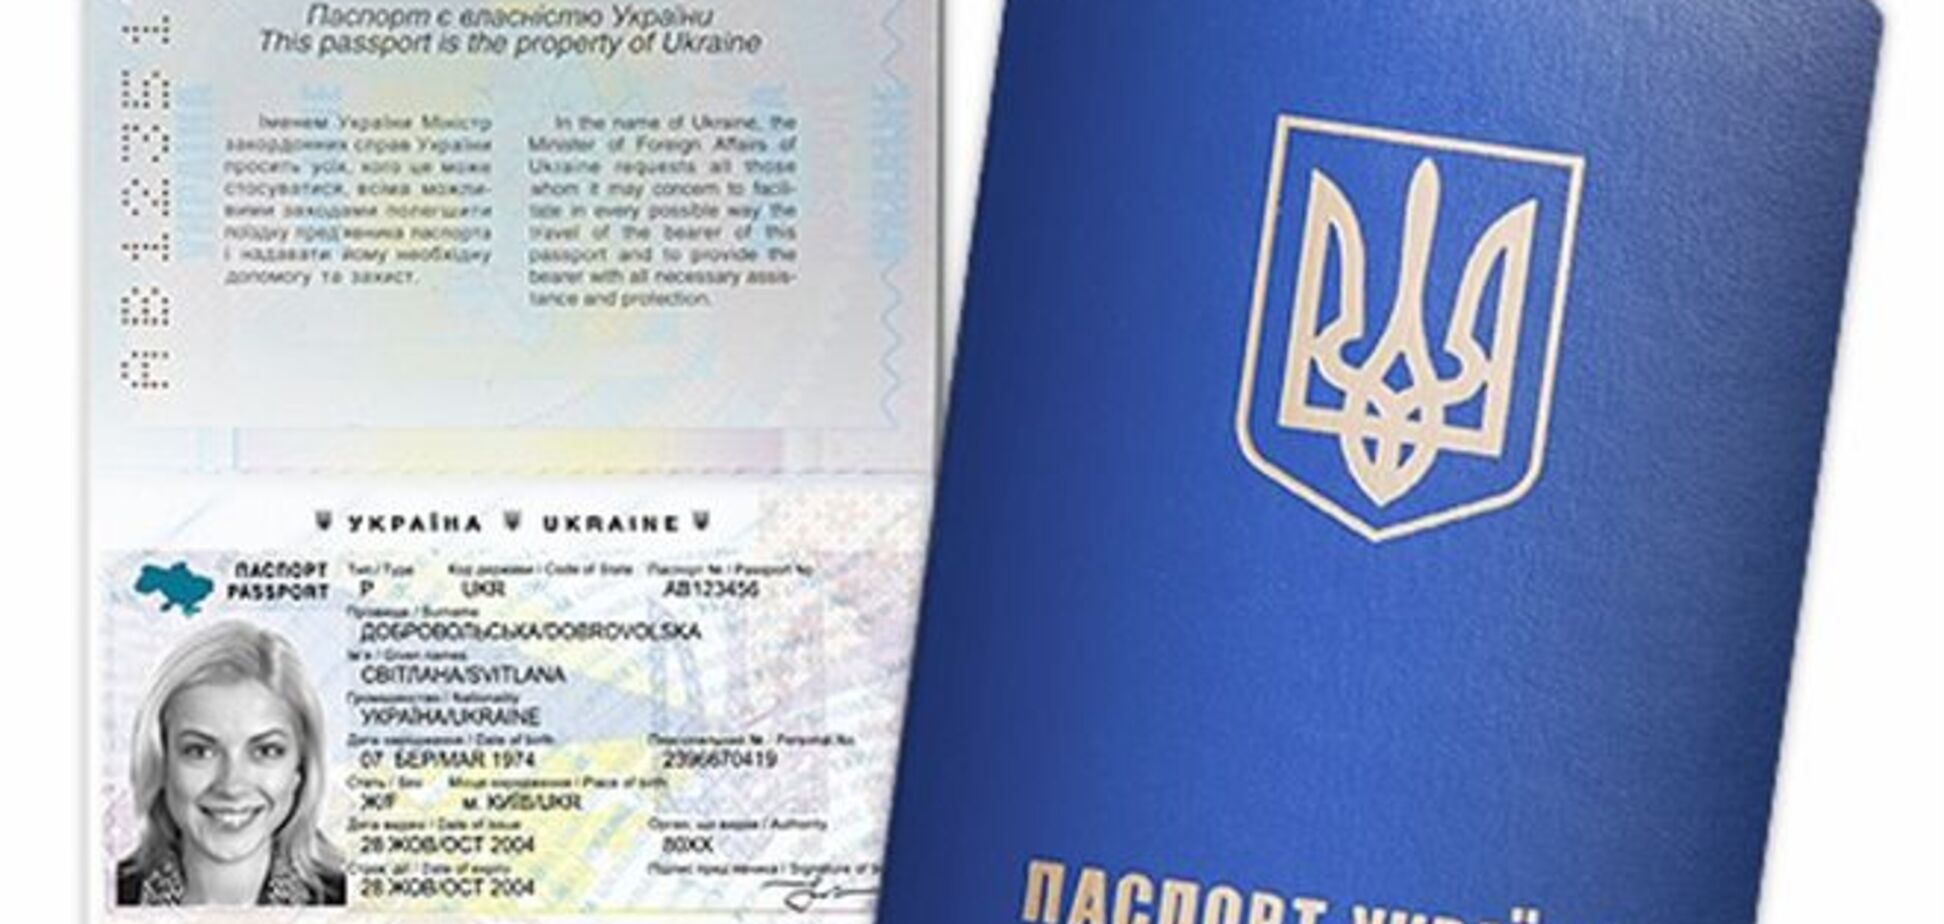 ВАСУ поставив крапку в суперечках про вартість закордонних паспортів